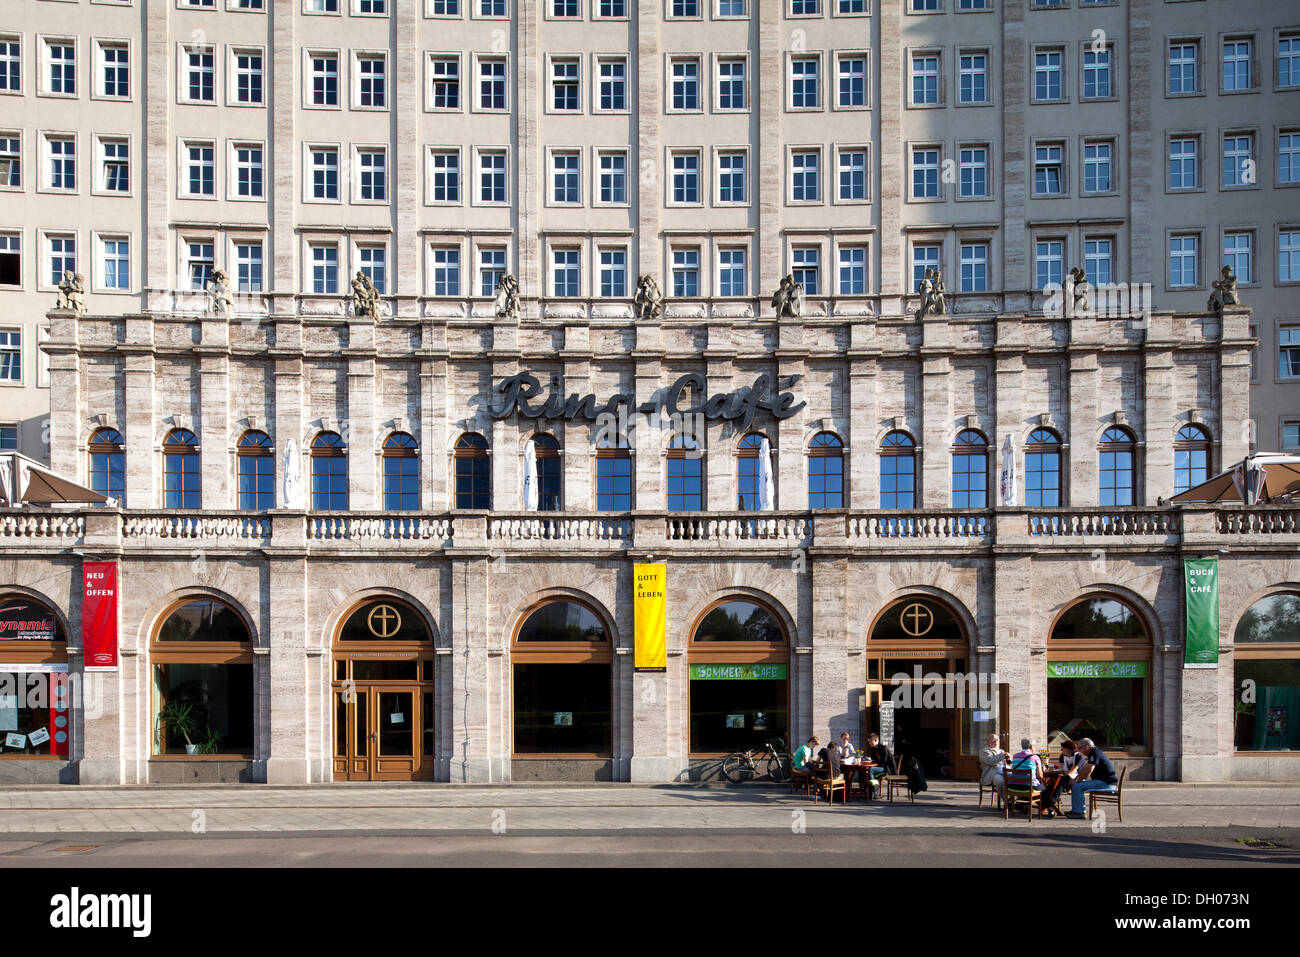 Ringbebauung bâtiments, Classicisme socialiste, Leipzig, PublicGround Banque D'Images